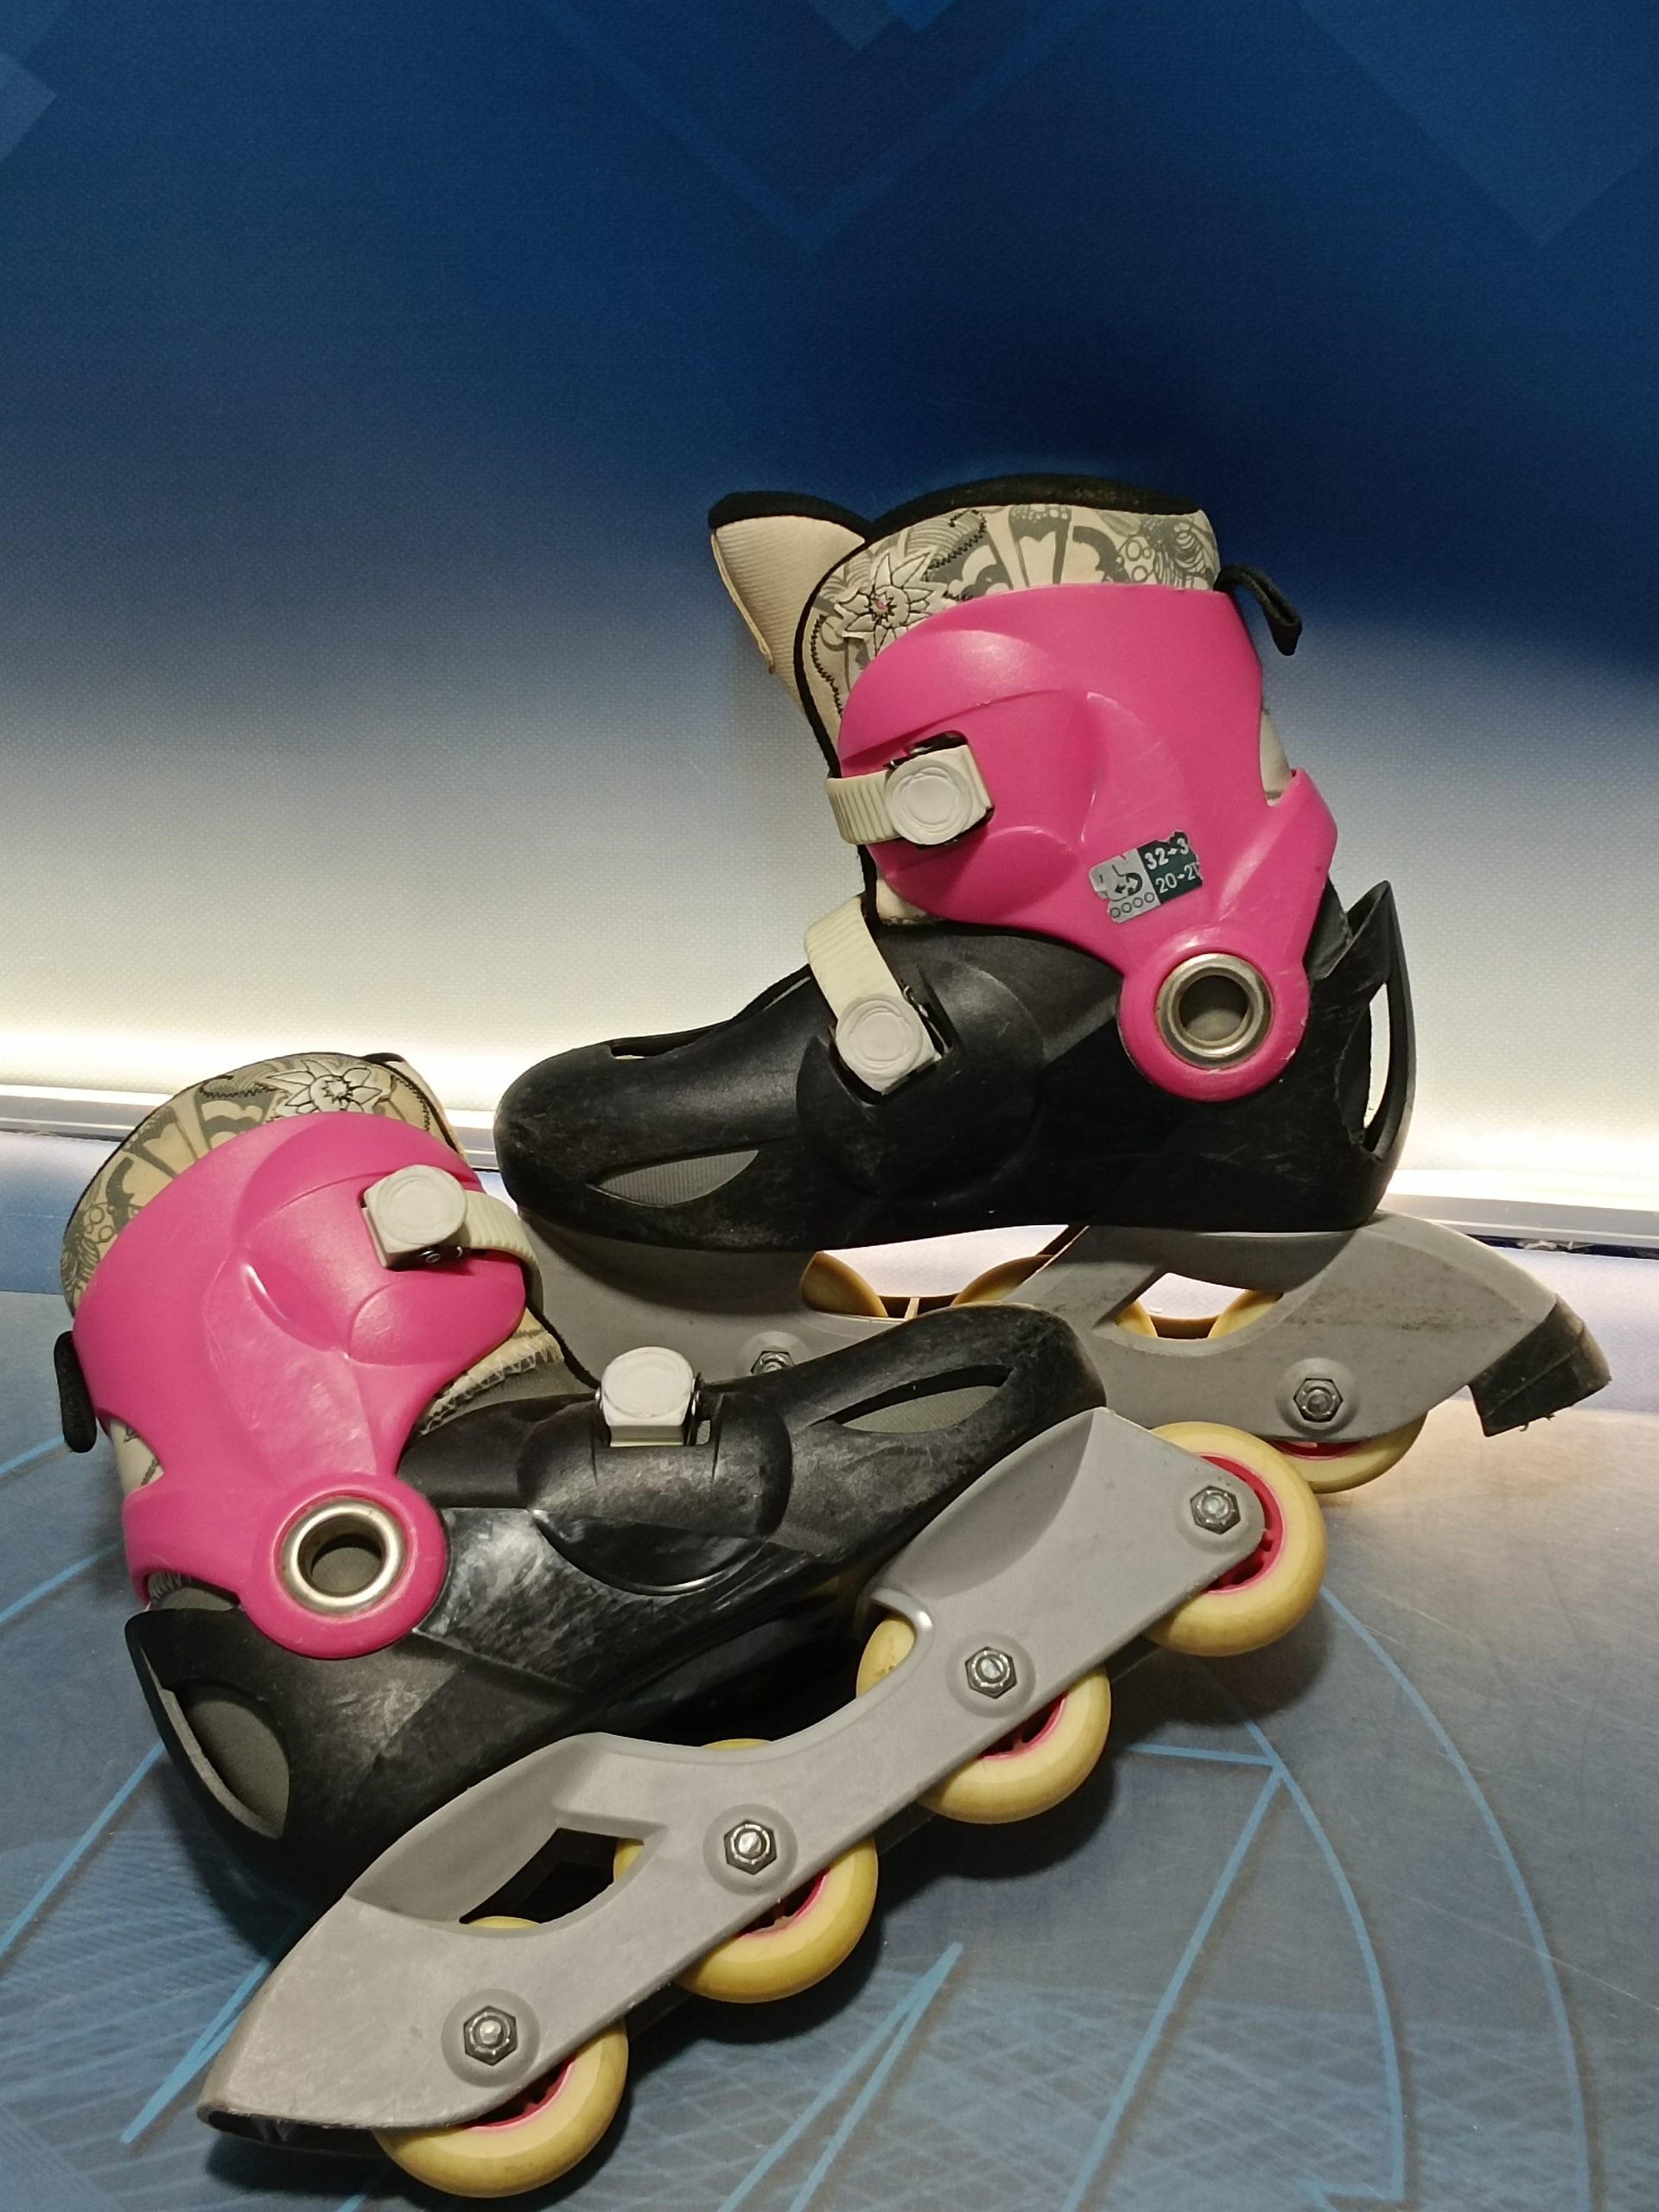 Lote dos pares de patines en linea infantil talla 26/28 (azul) y 30/32  (rosa) oxelo - VendeloAmazing